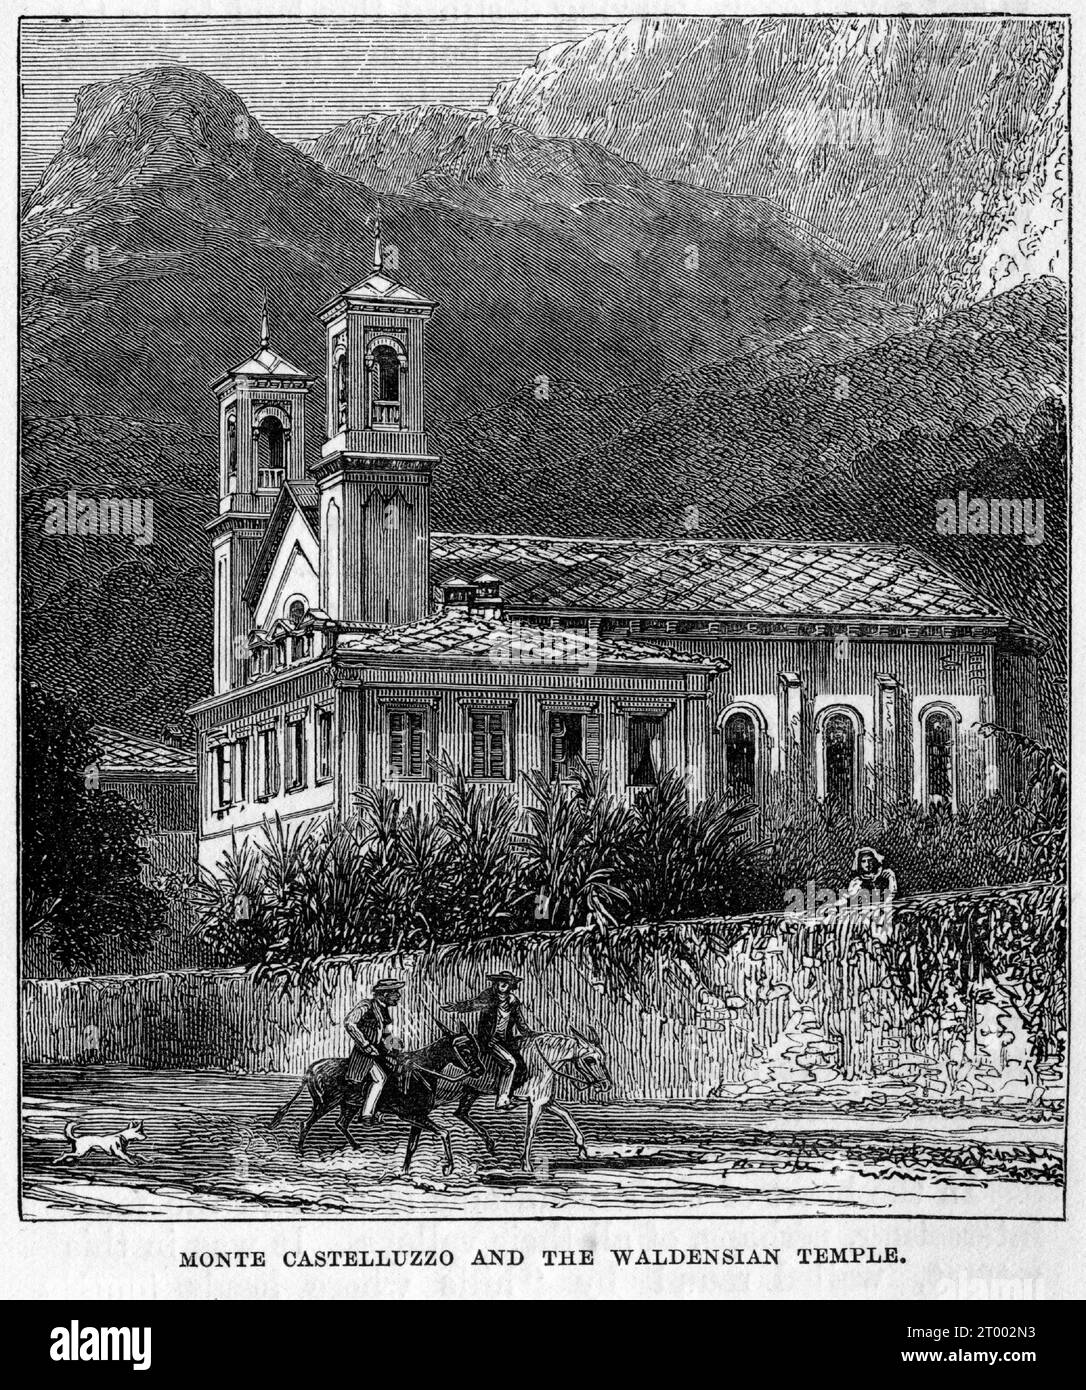 Incisione di Monte Castelluzzo e del tempio valdese Foto Stock